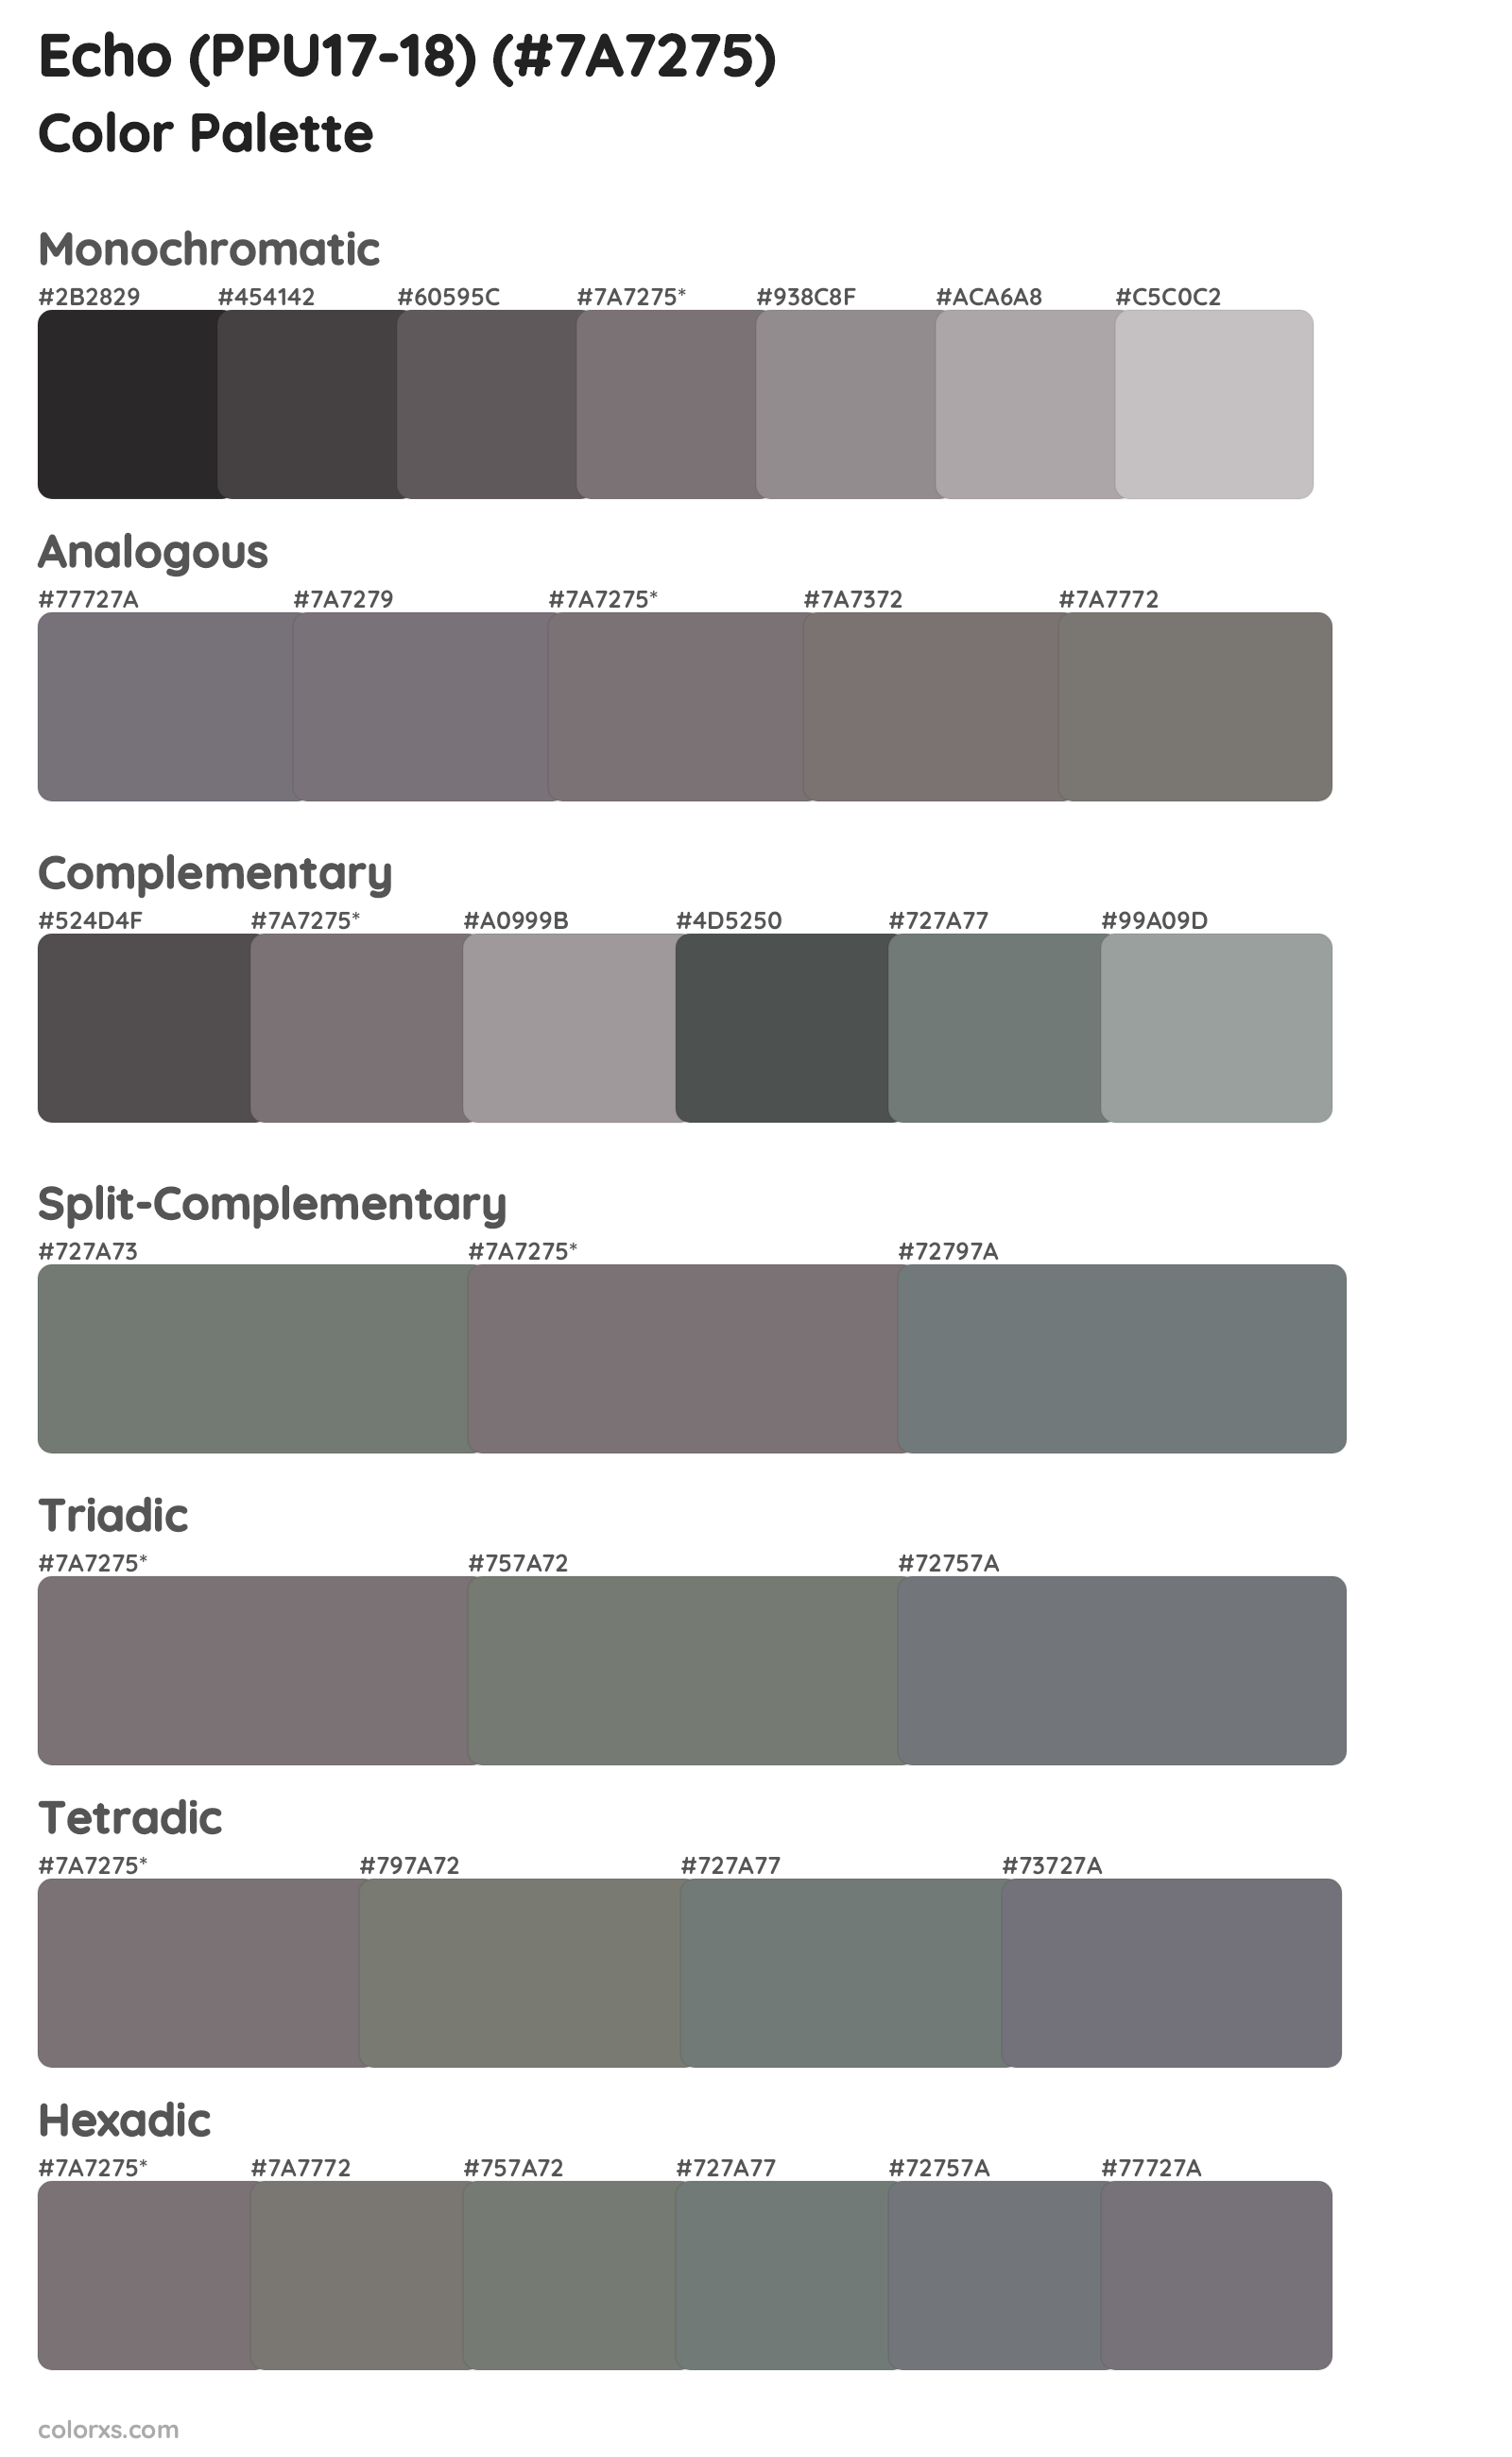 Echo (PPU17-18) Color Scheme Palettes